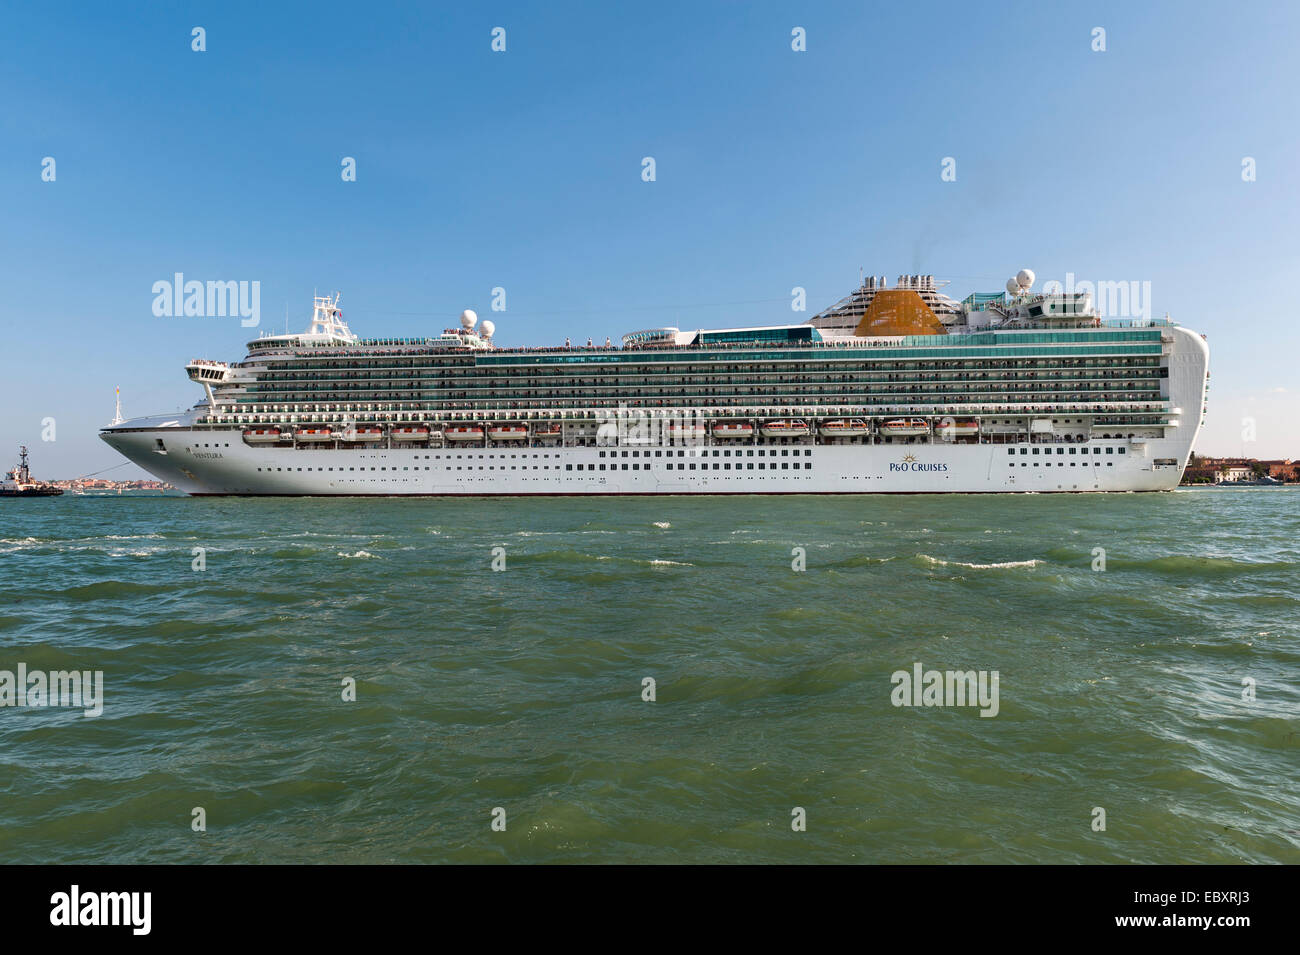 The huge P&O cruise ship 'Ventura' entering Venice, Italy Stock Photo